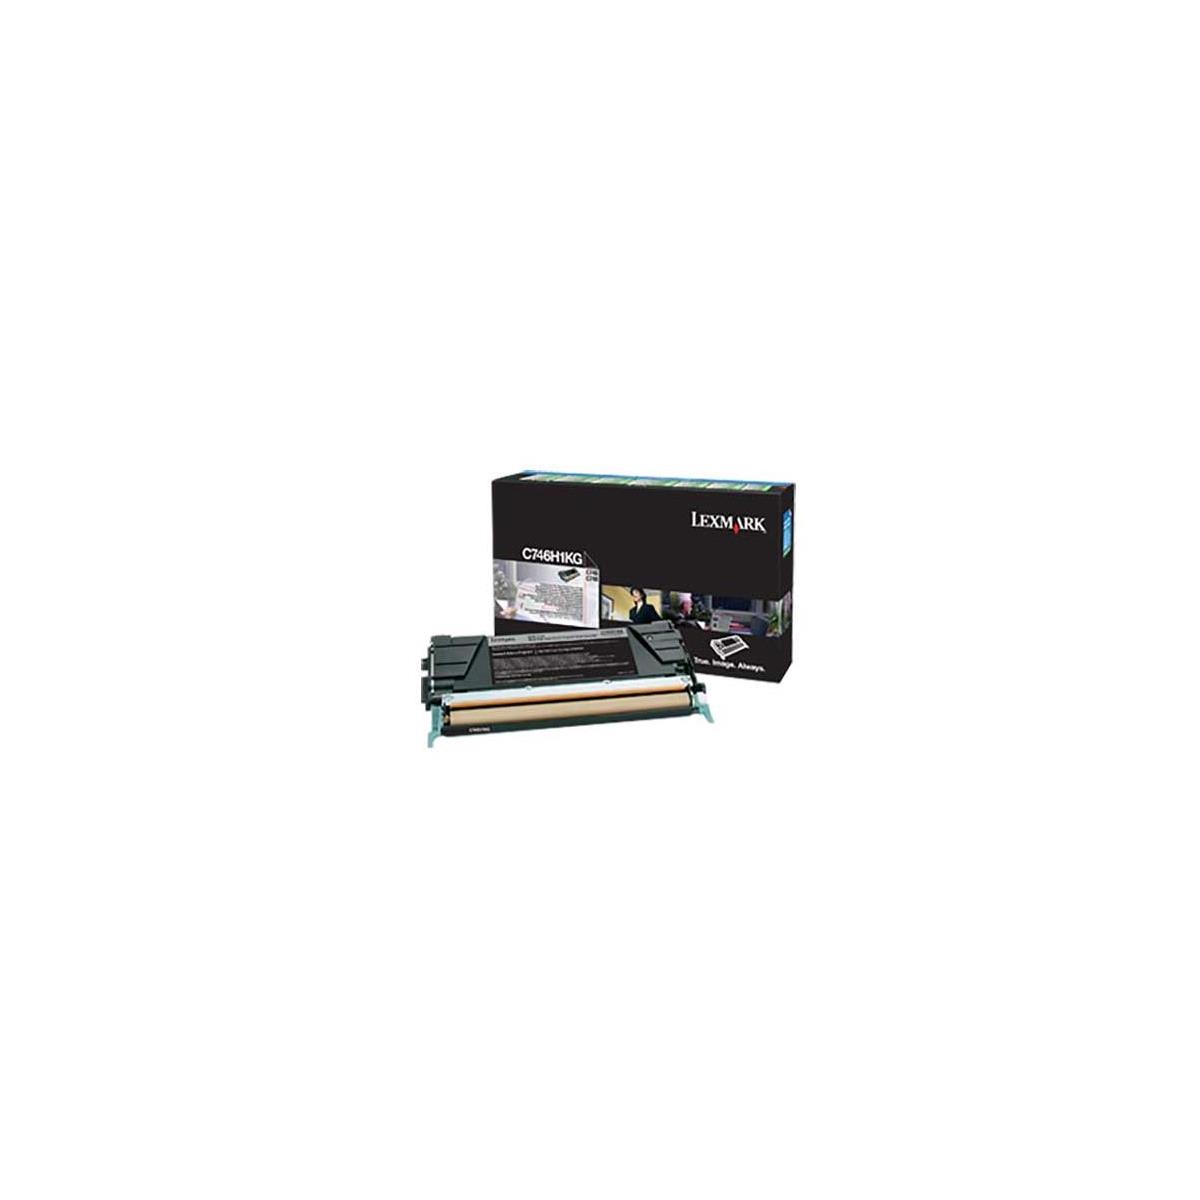 Image of Lexmark Black Toner Cartridge for C746 and C748 Color Laser Printer